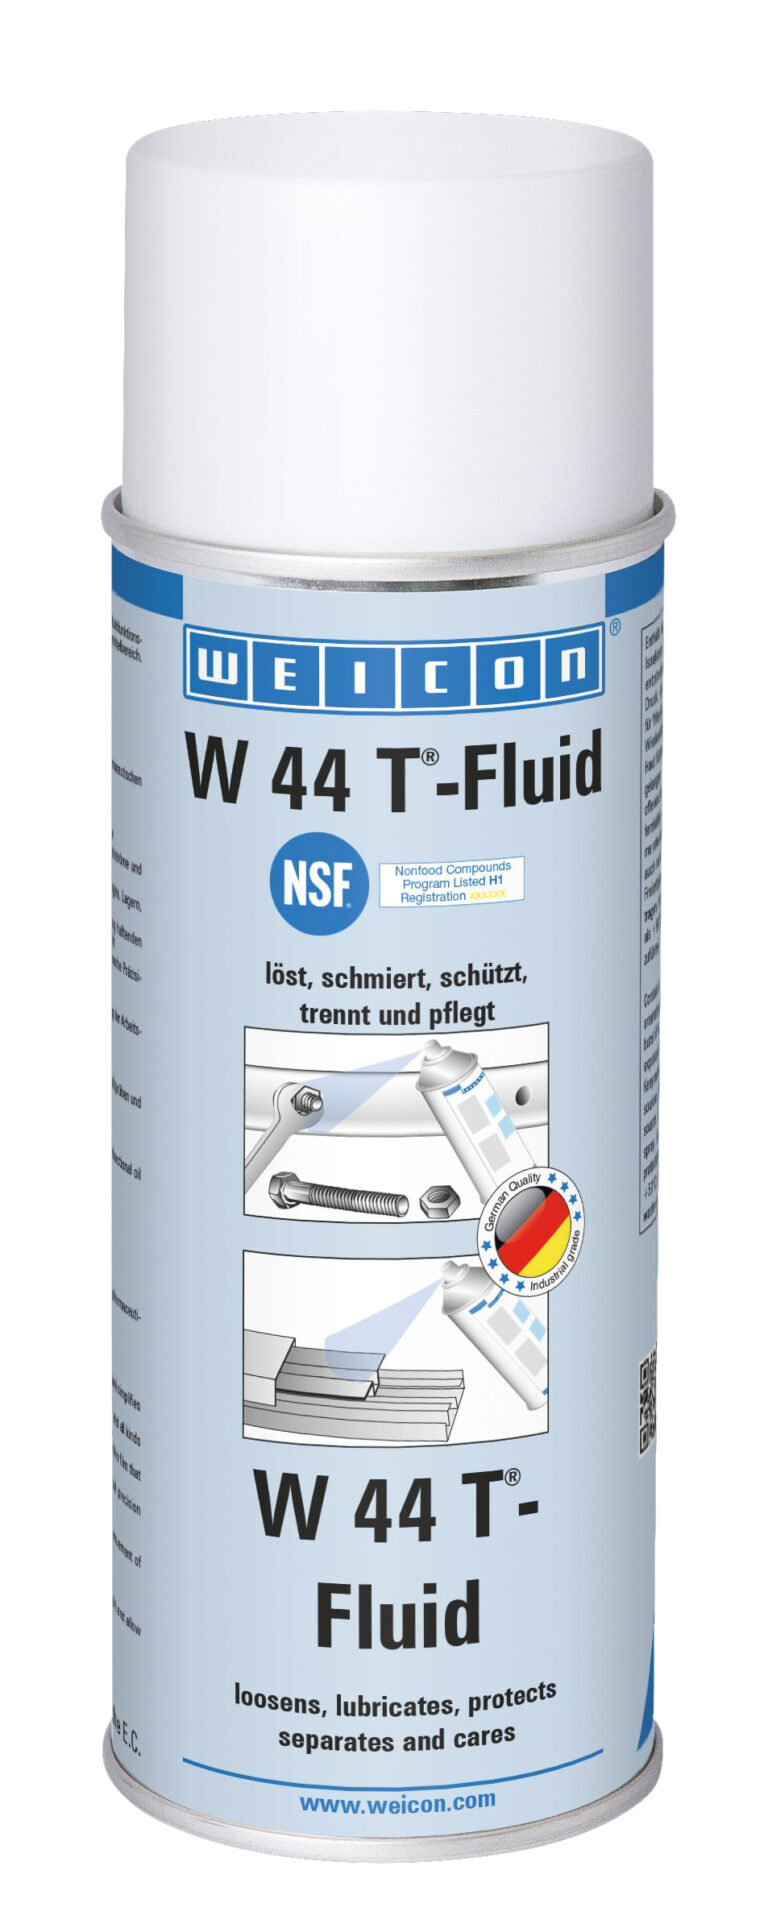 W 44 T Fluid